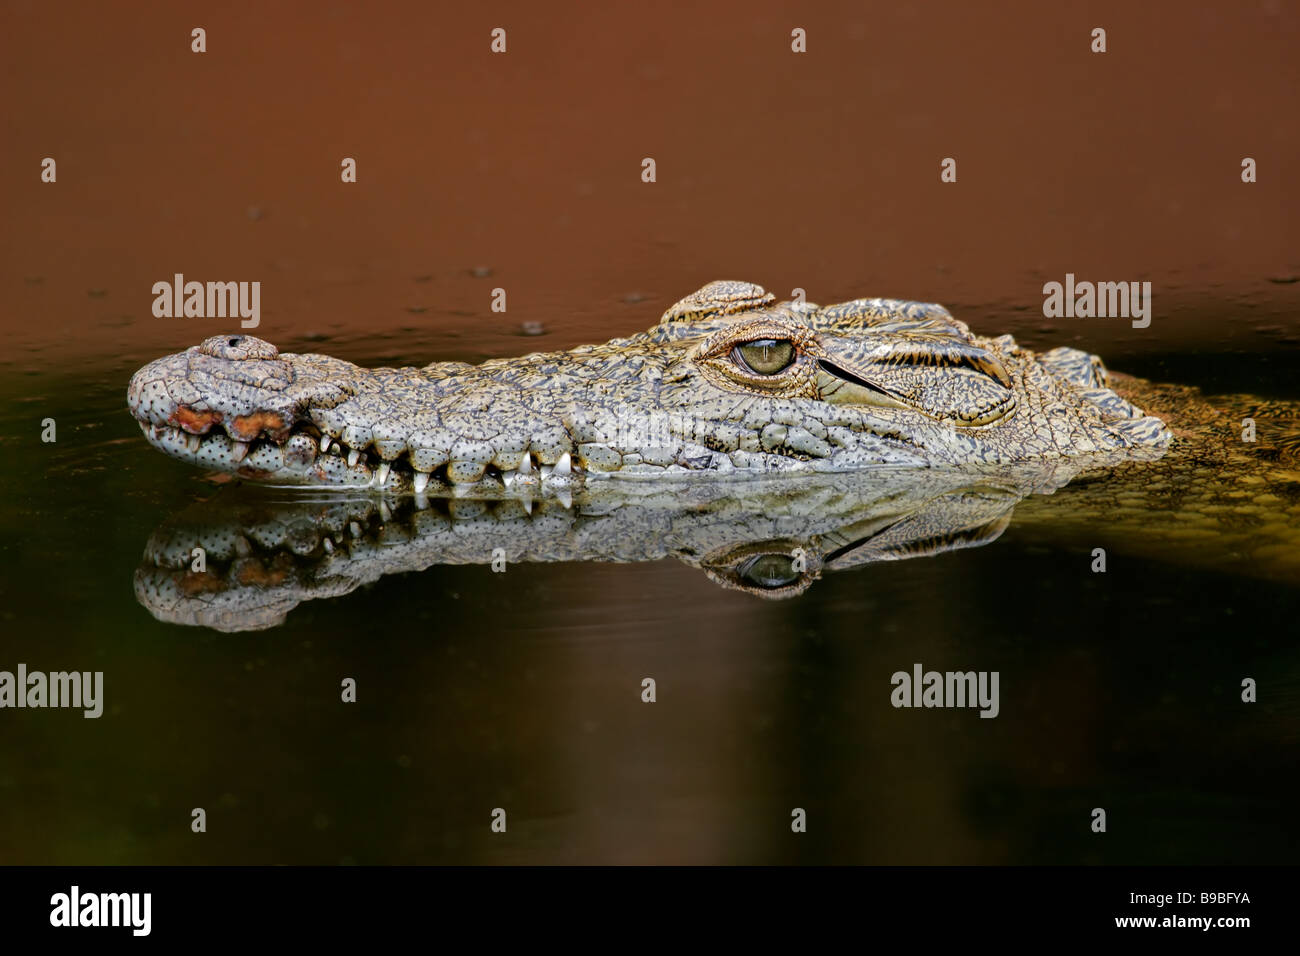 Ritratto di un coccodrillo del Nilo (Crocodylus niloticus) in acqua con la riflessione, Sud Africa Foto Stock